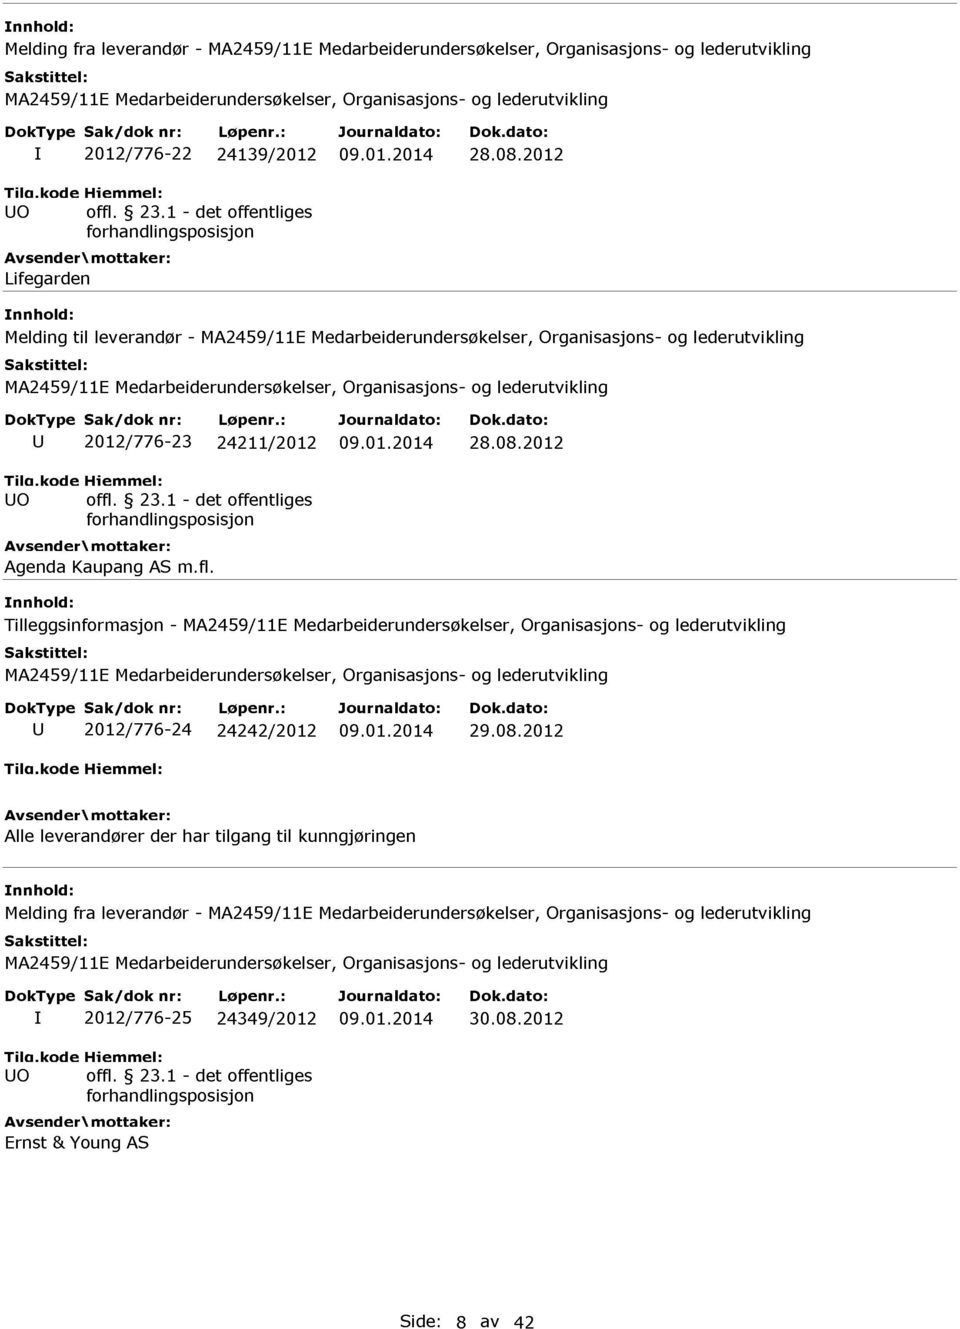 2012 Agenda Kaupang AS m.fl. Tilleggsinformasjon - U 2012/776-24 24242/2012 09.01.2014 29.08.